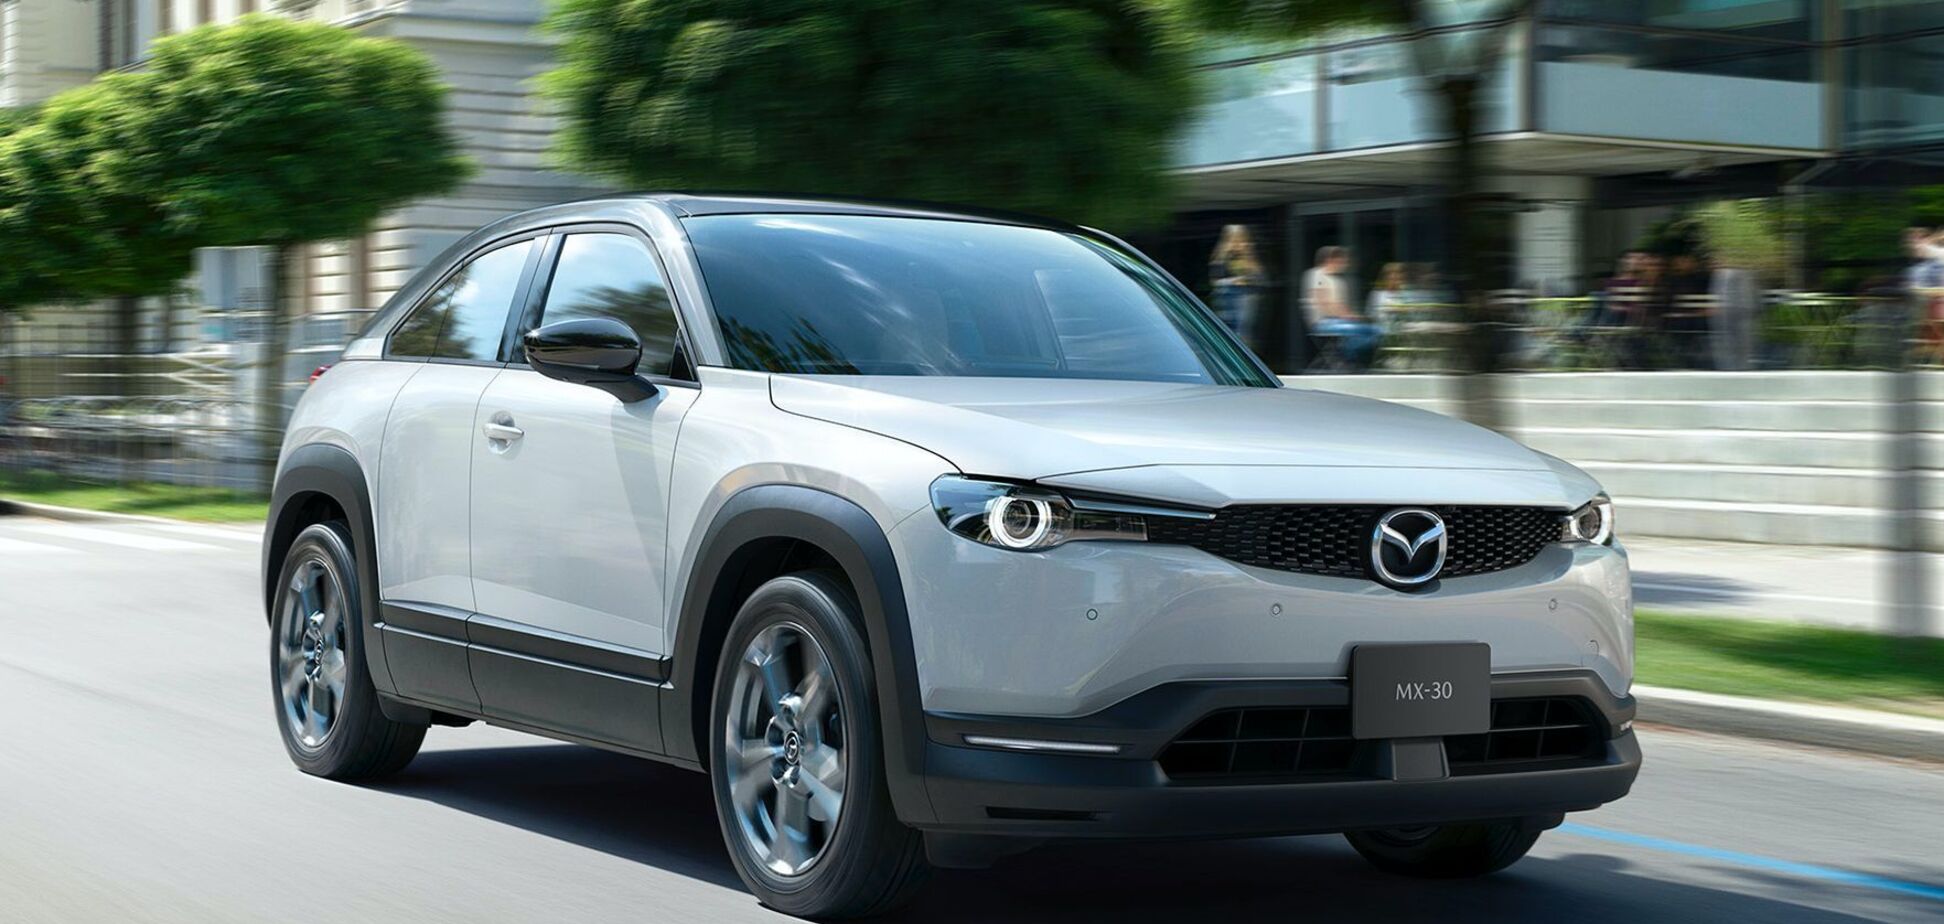 Mazda раптово 'залила' у свій перший електромобіль бензин